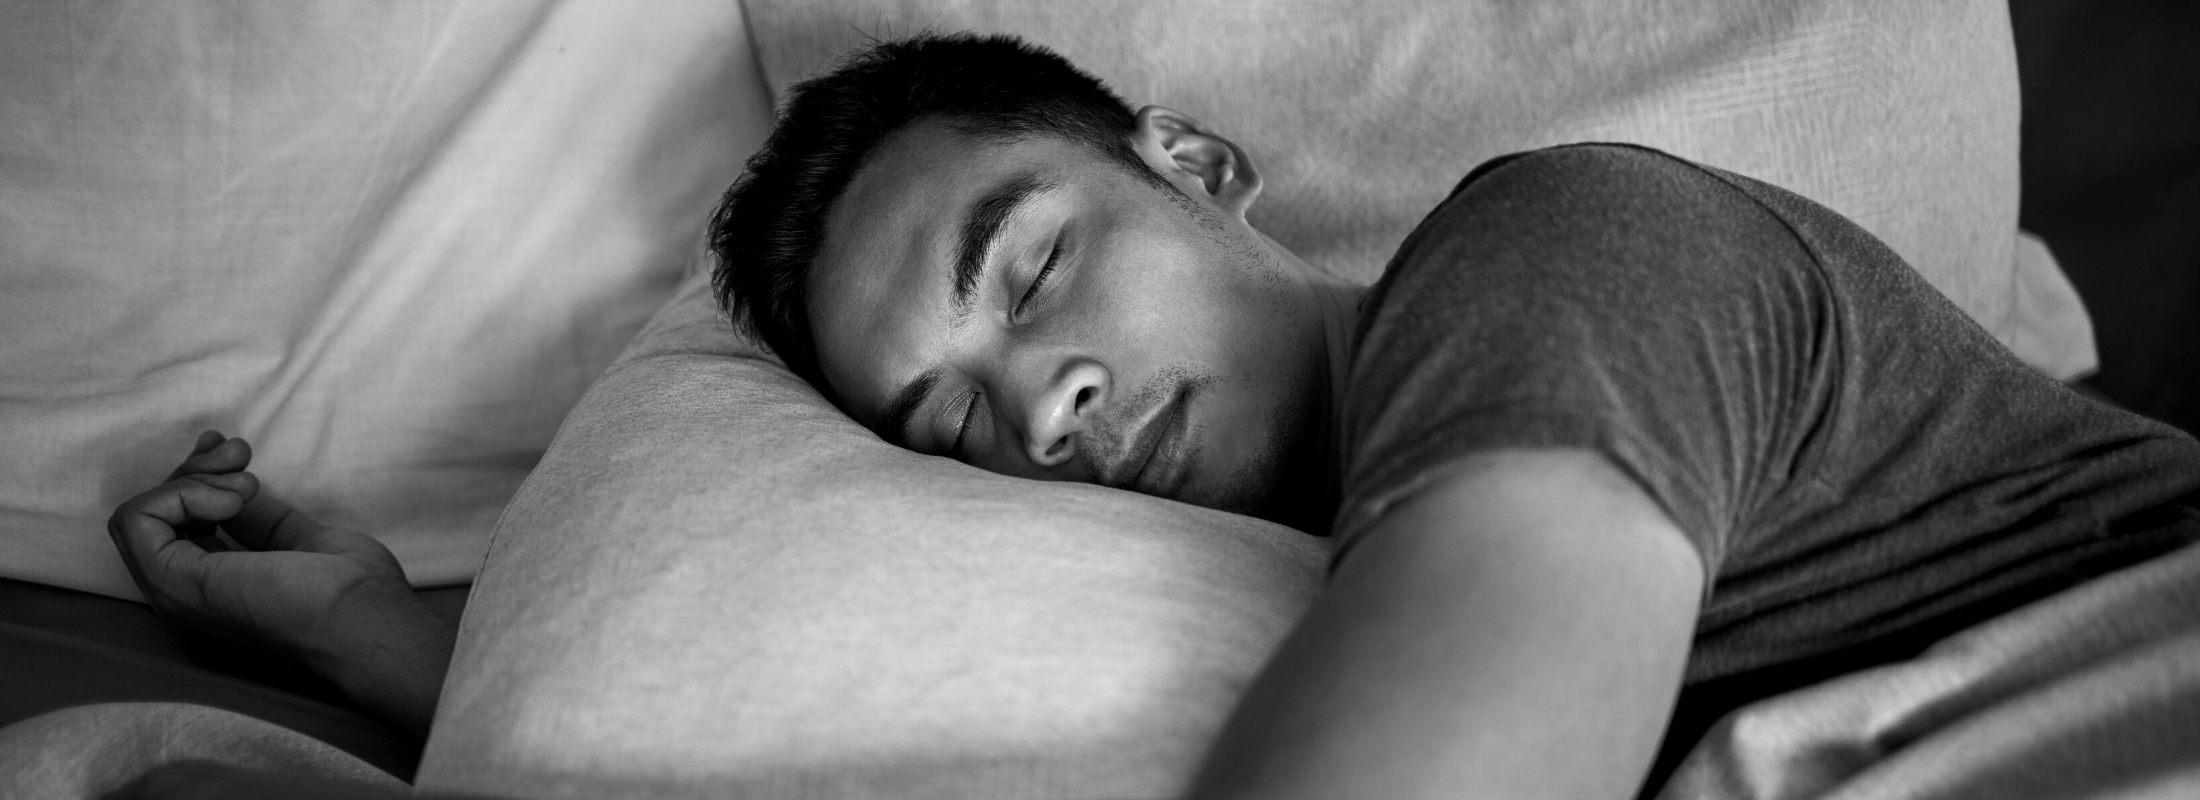 A man peacefully sleeping in a deep sleep